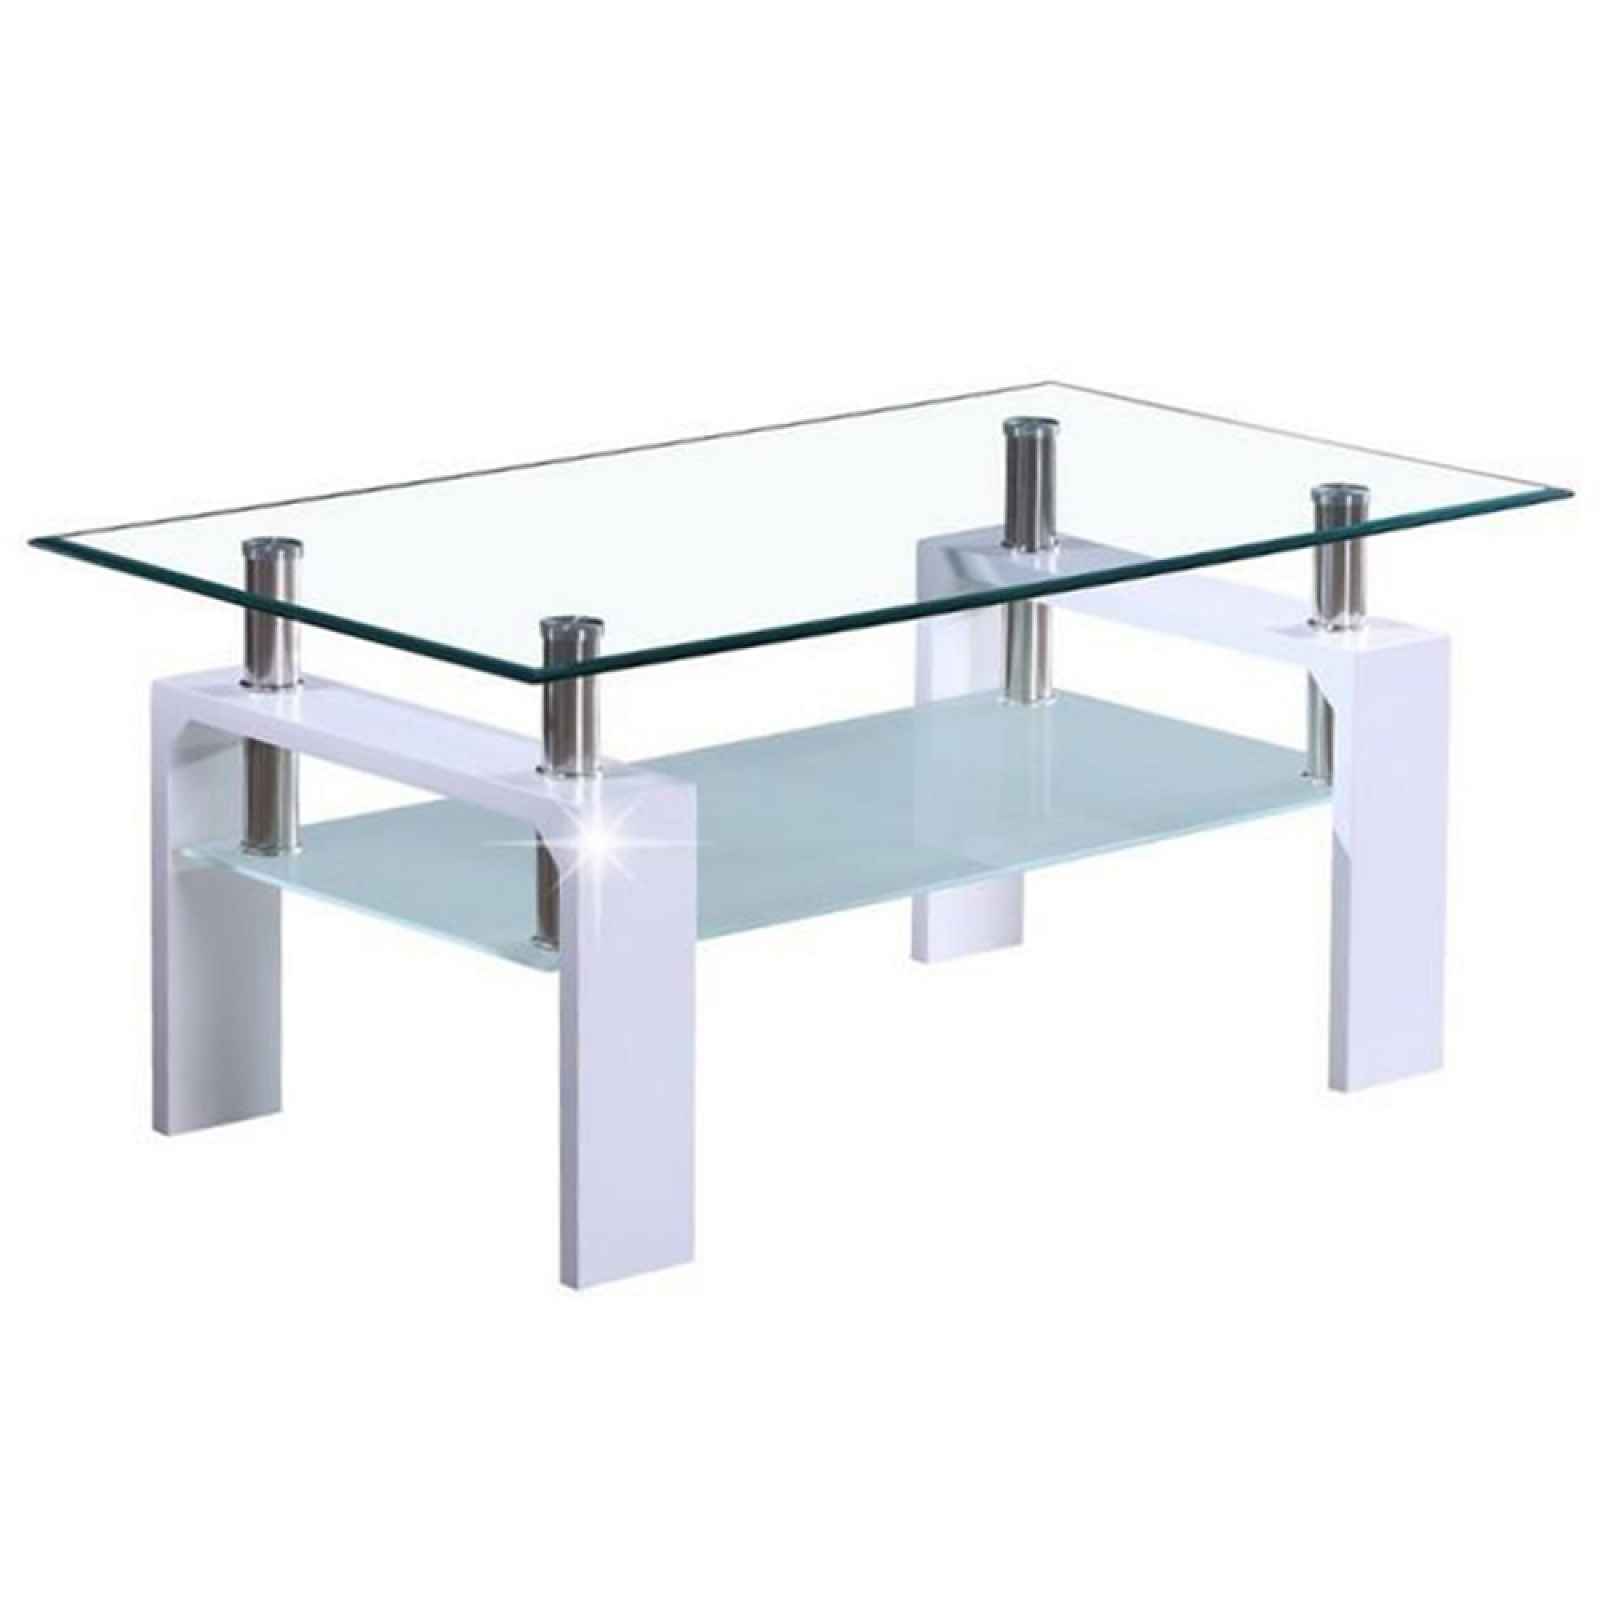 LIBOR konferenční stolek, sklo/bílý lesk